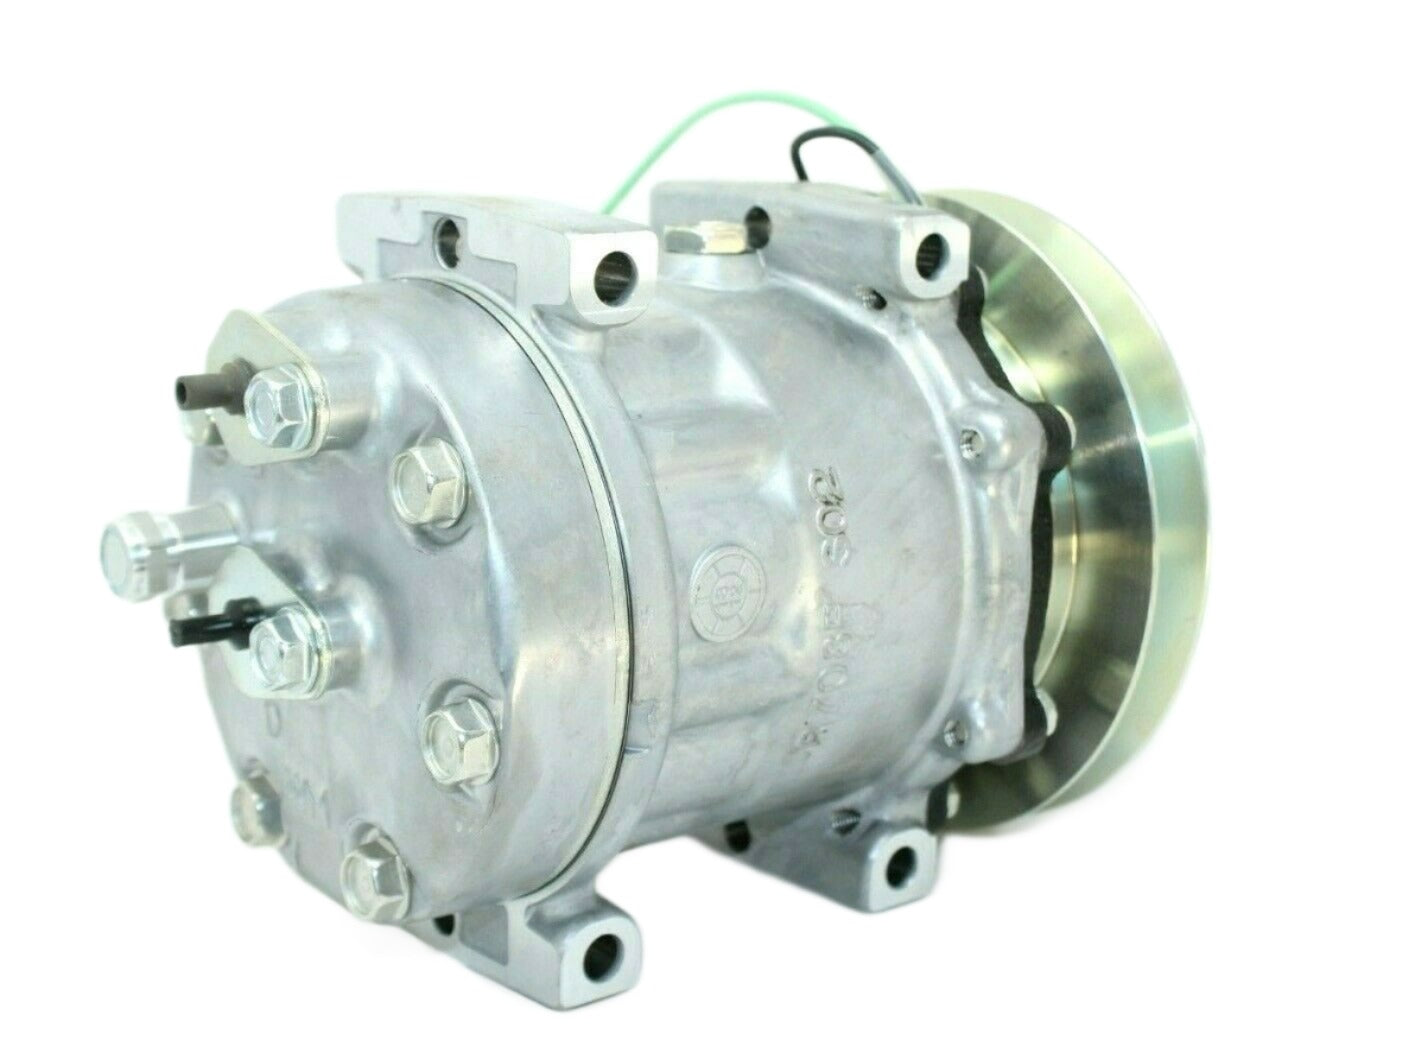 Sanden 8925 Ac Compressor For Kobelco Komatsu Case Link Belt 70-1-0016